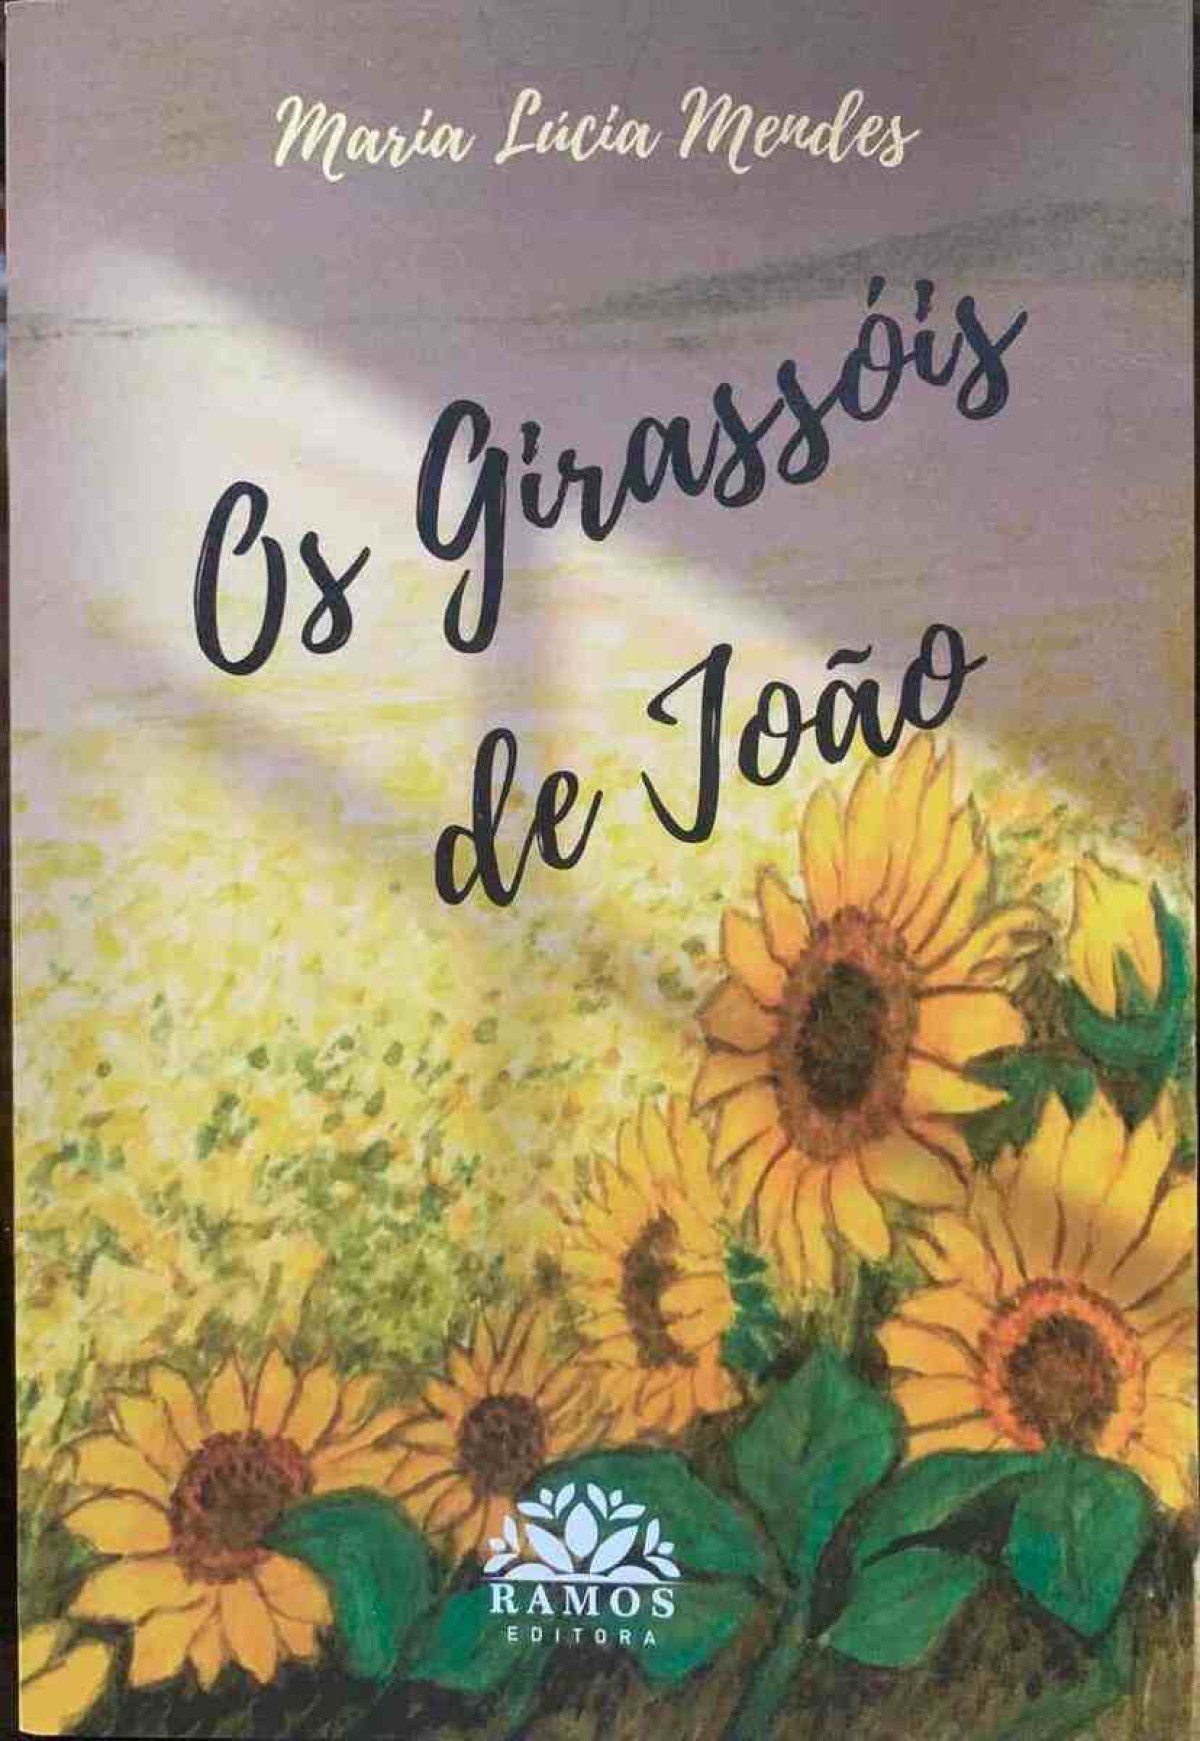 Escritora mineira publica sua 17ª obra e celebra 40 anos de vida literária com o livro "Os Girassóis de João", da Ramos Editora